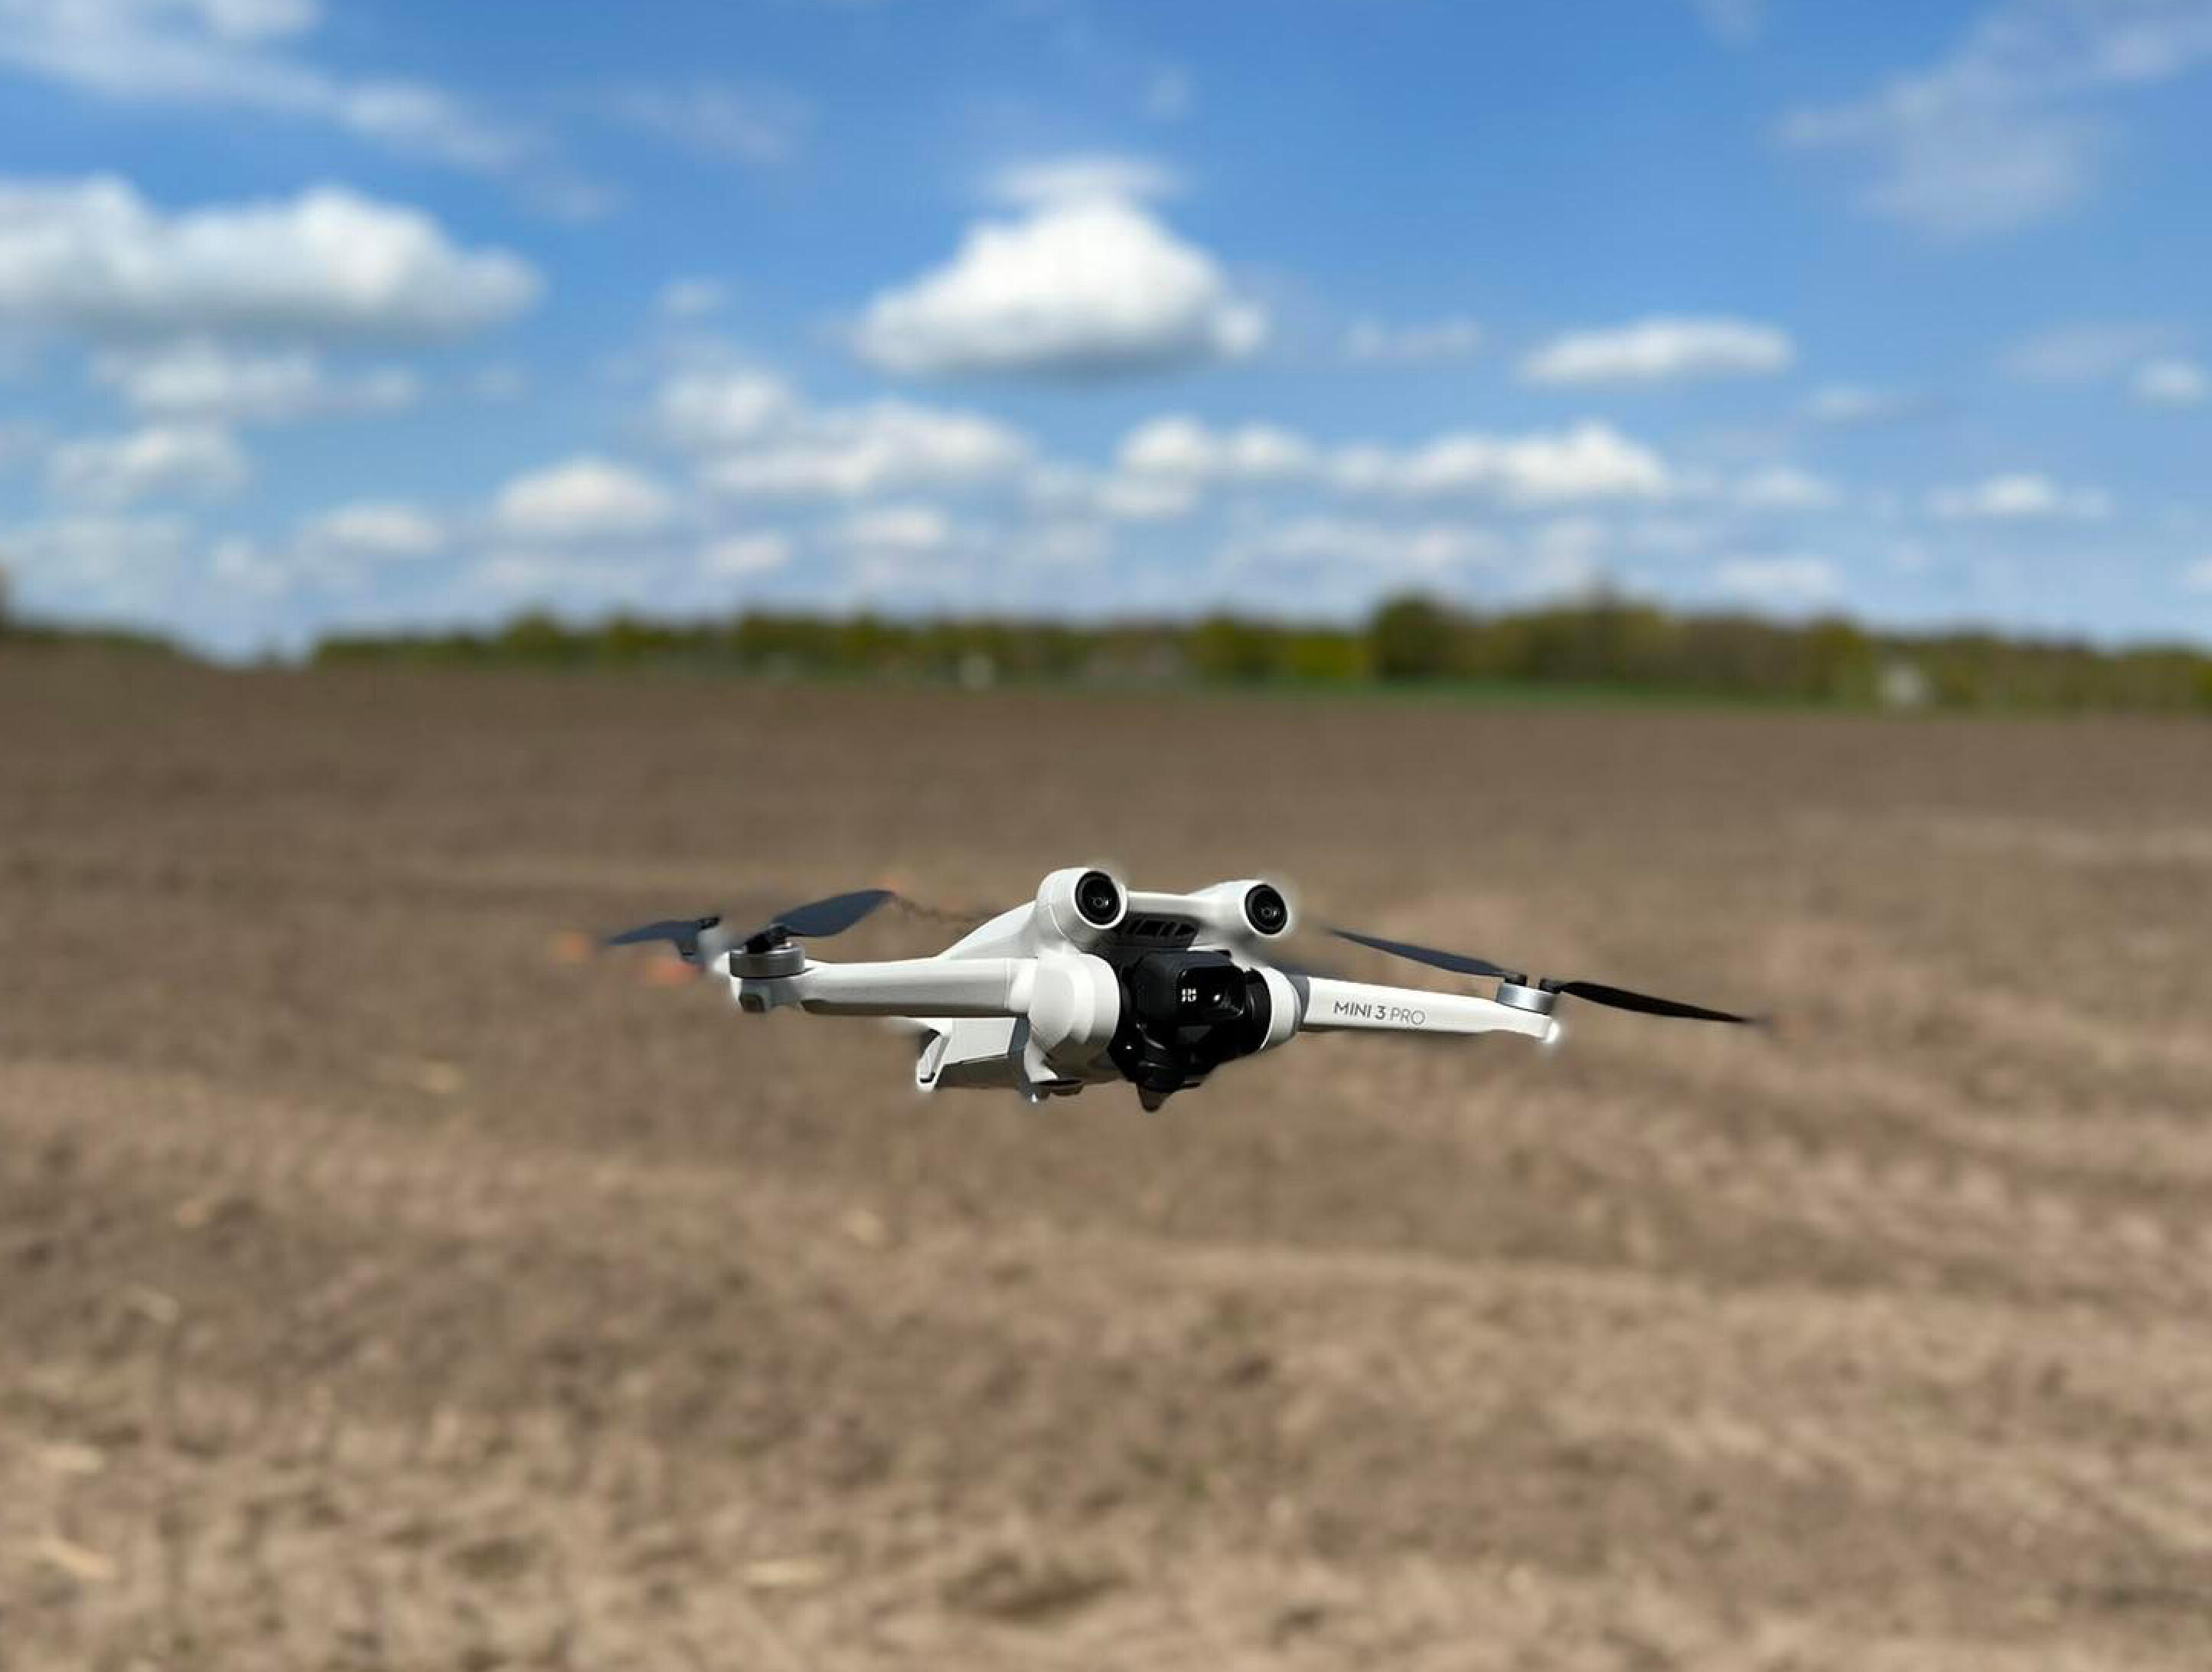 Drohnen im Blindflug: Widersprüchliche Regeln und Verbote | heise online